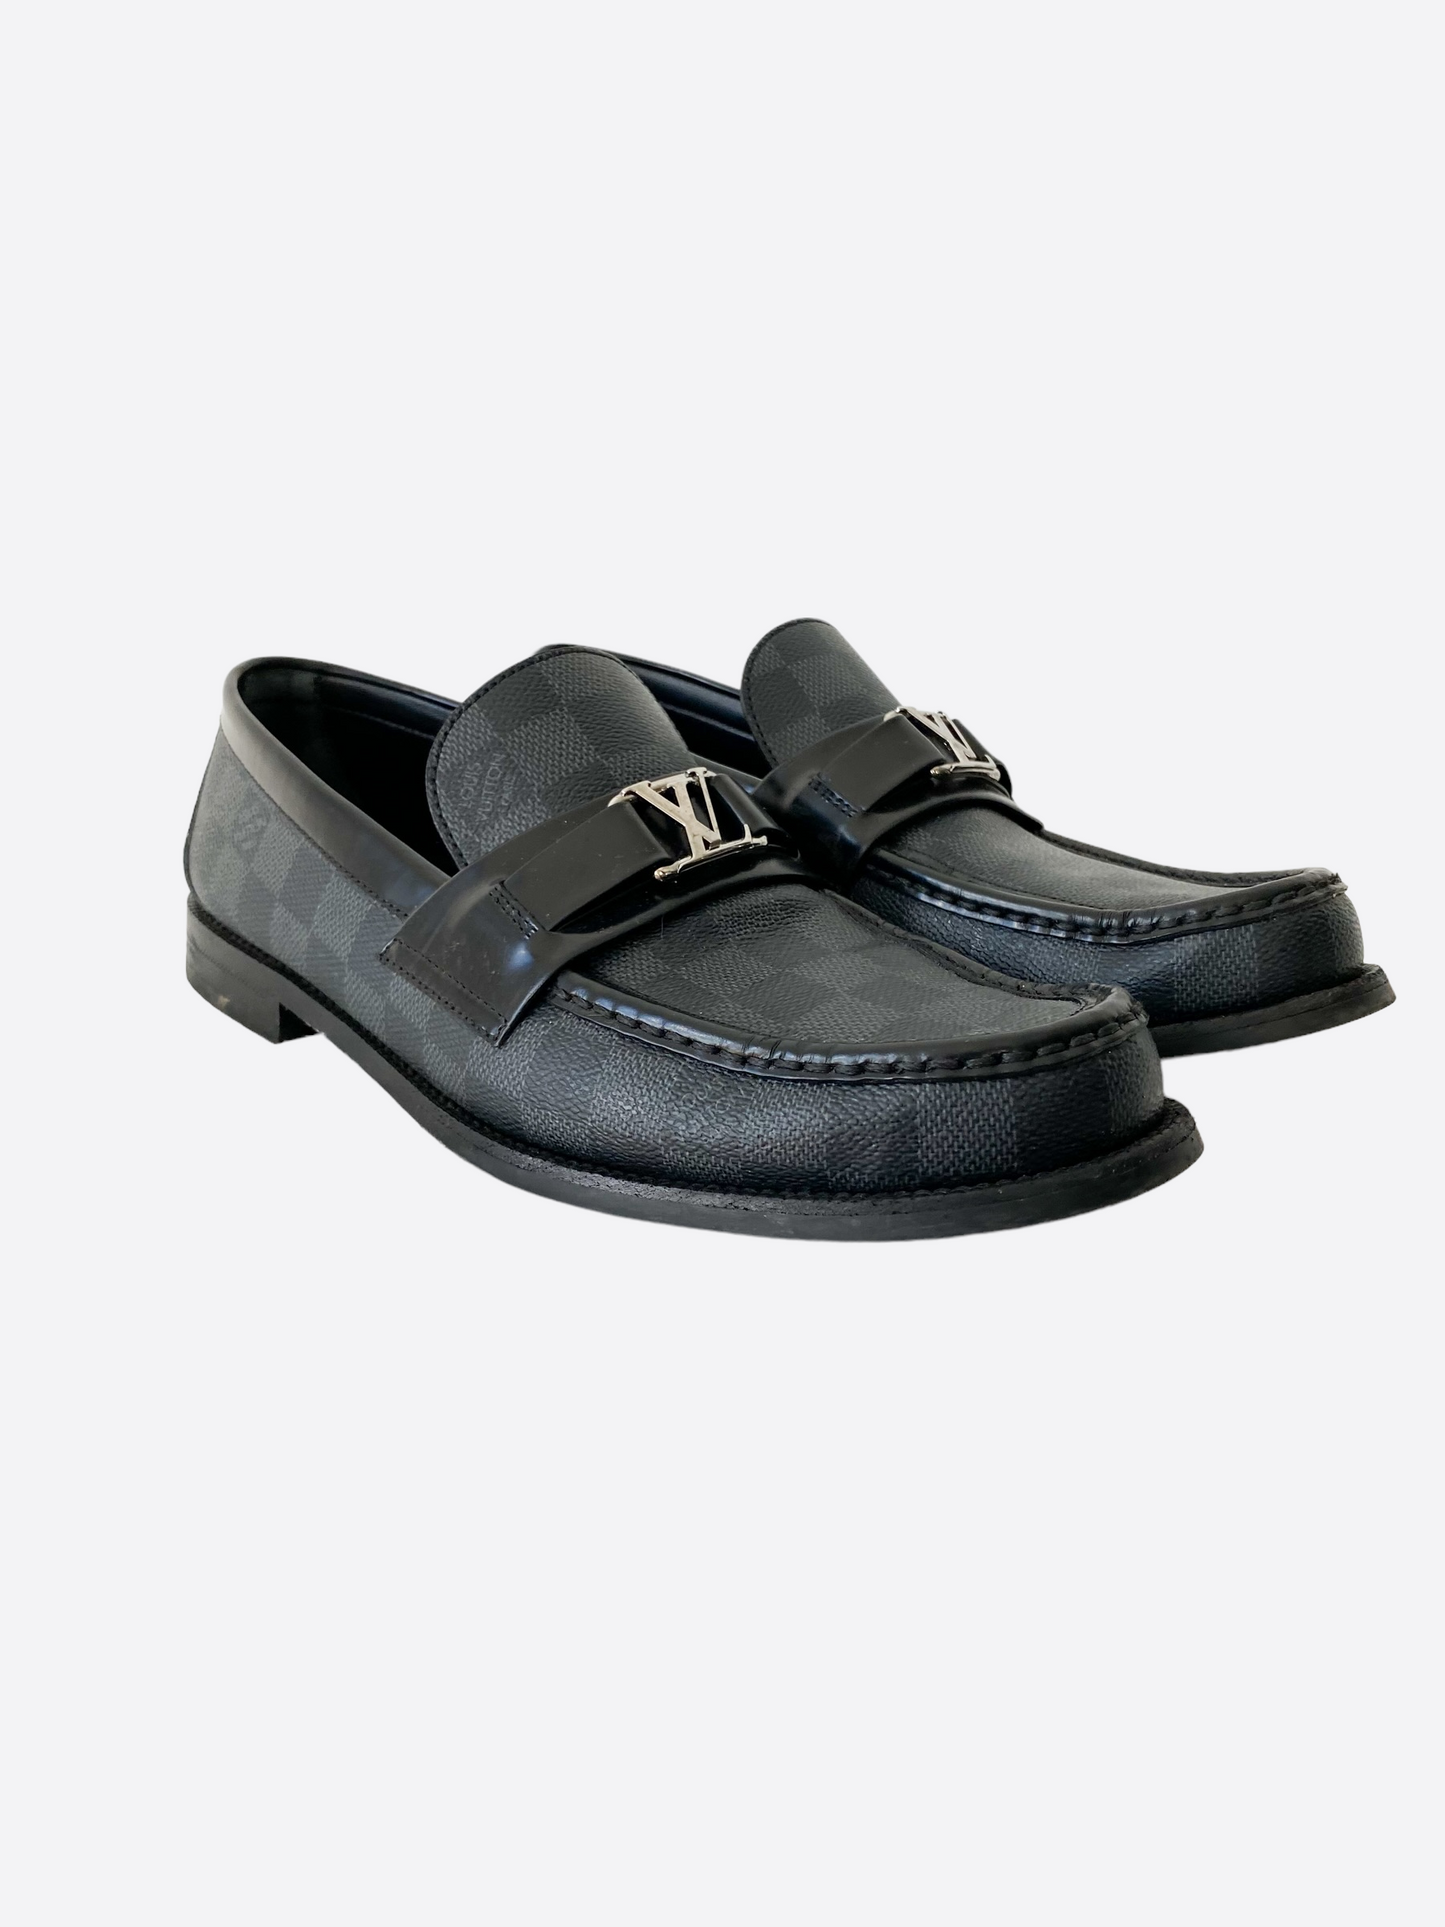 Louis Vuitton, Shoes, Louis Vuitton Mens Major Loafer